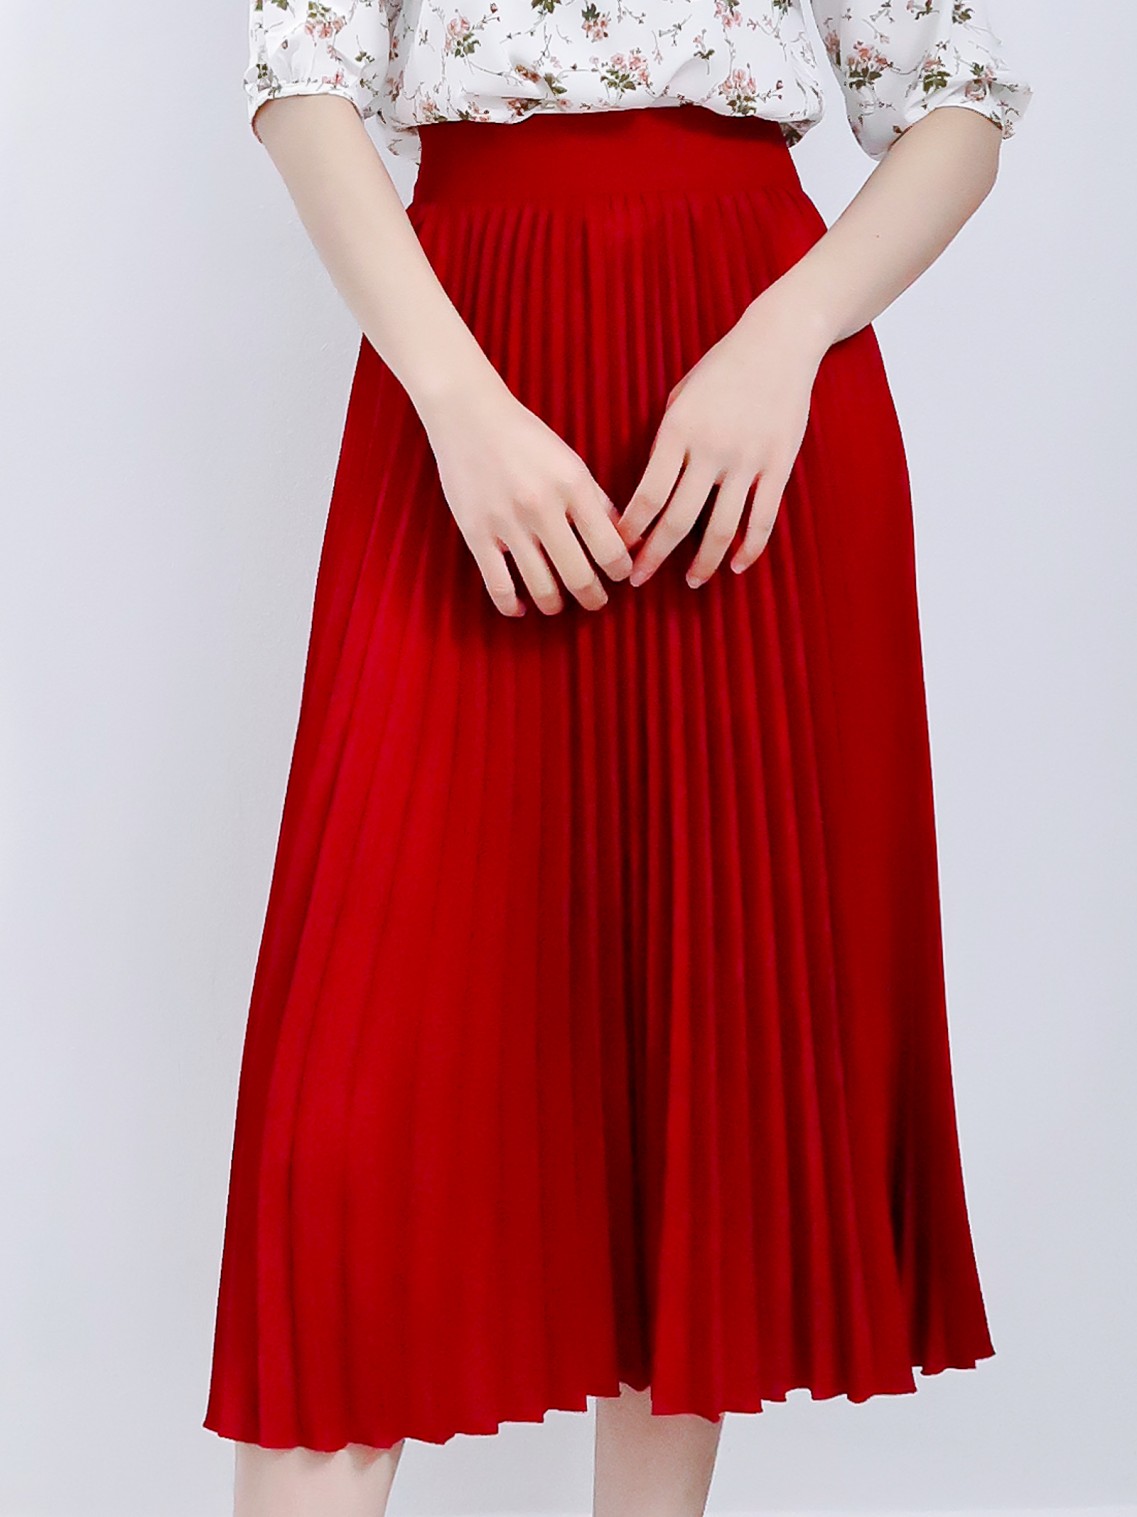 Chi tiết với hơn 85 chân váy đỏ hay nhất  cdgdbentreeduvn